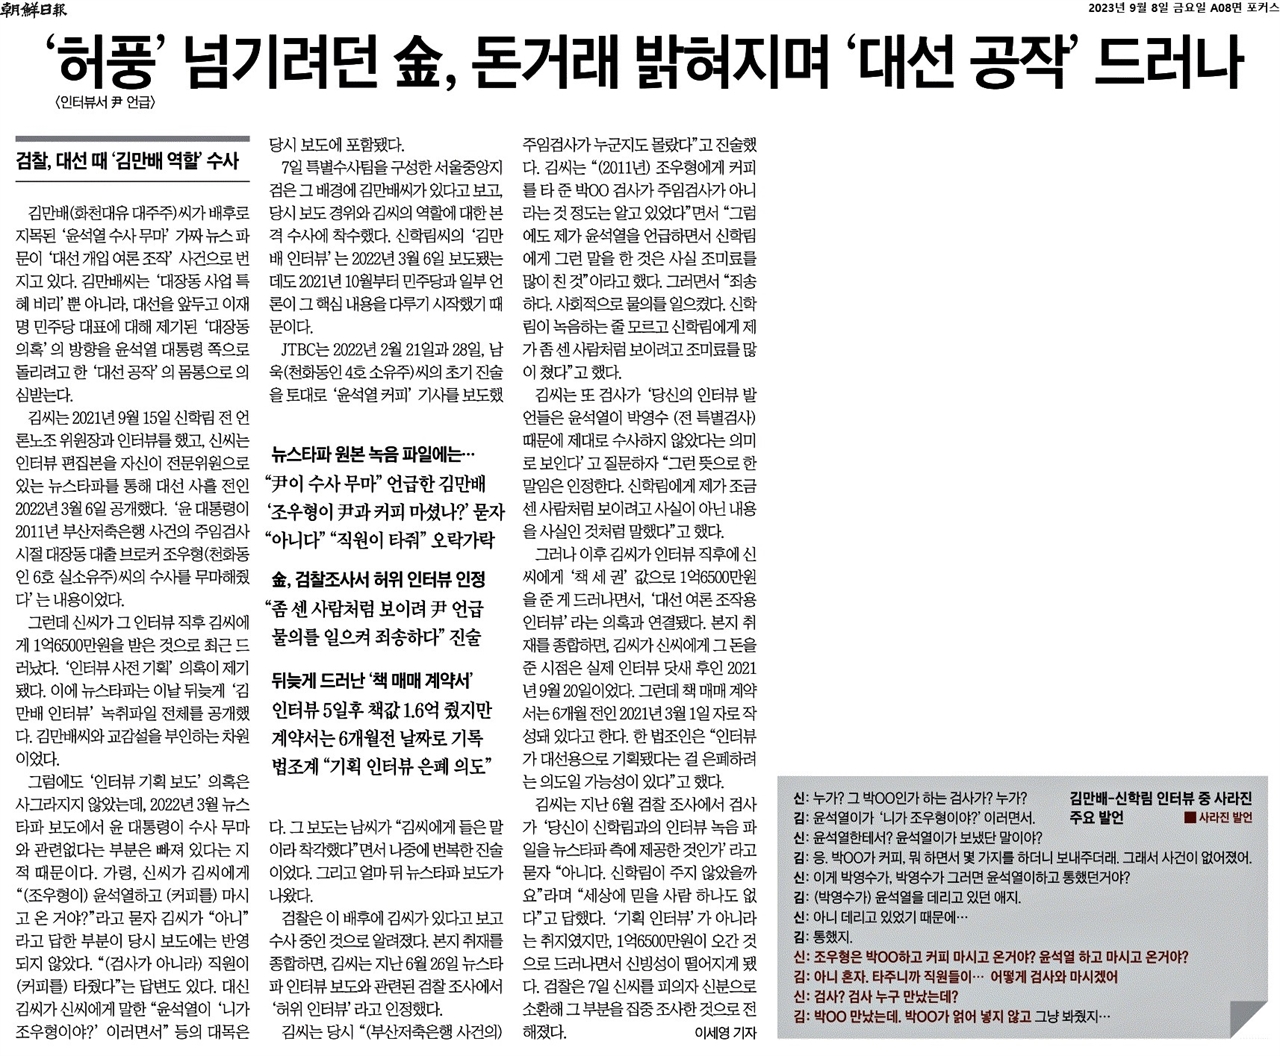 김만배 인터뷰 의혹을 대선공작이라 규정한 조선 보도